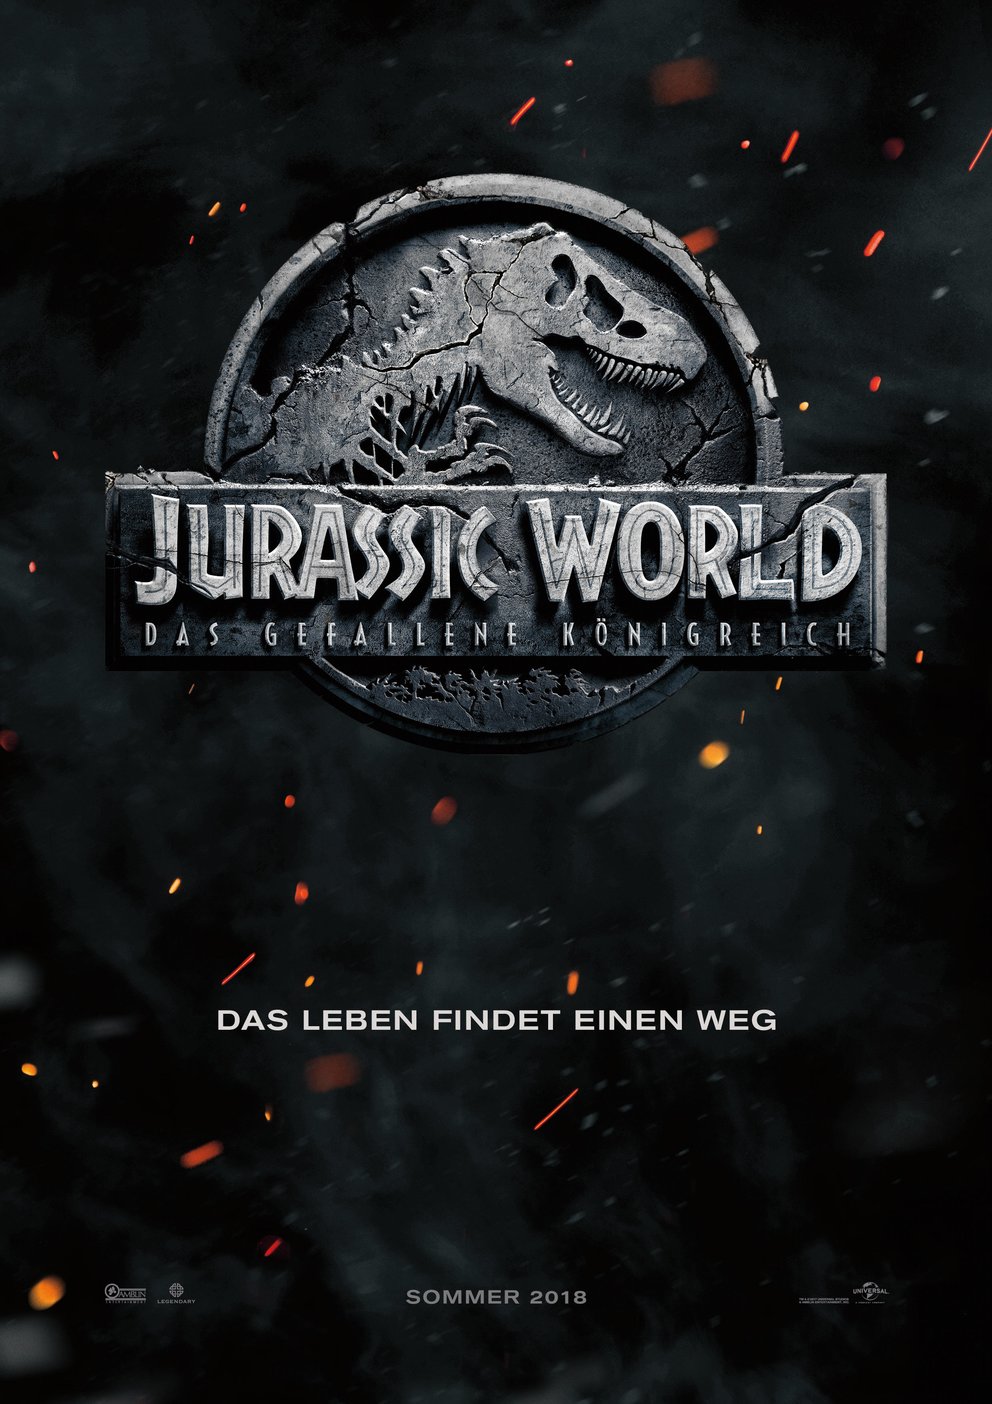 Jurassic World 2 Das gefallene Königreich Poster Fallen Kingdom